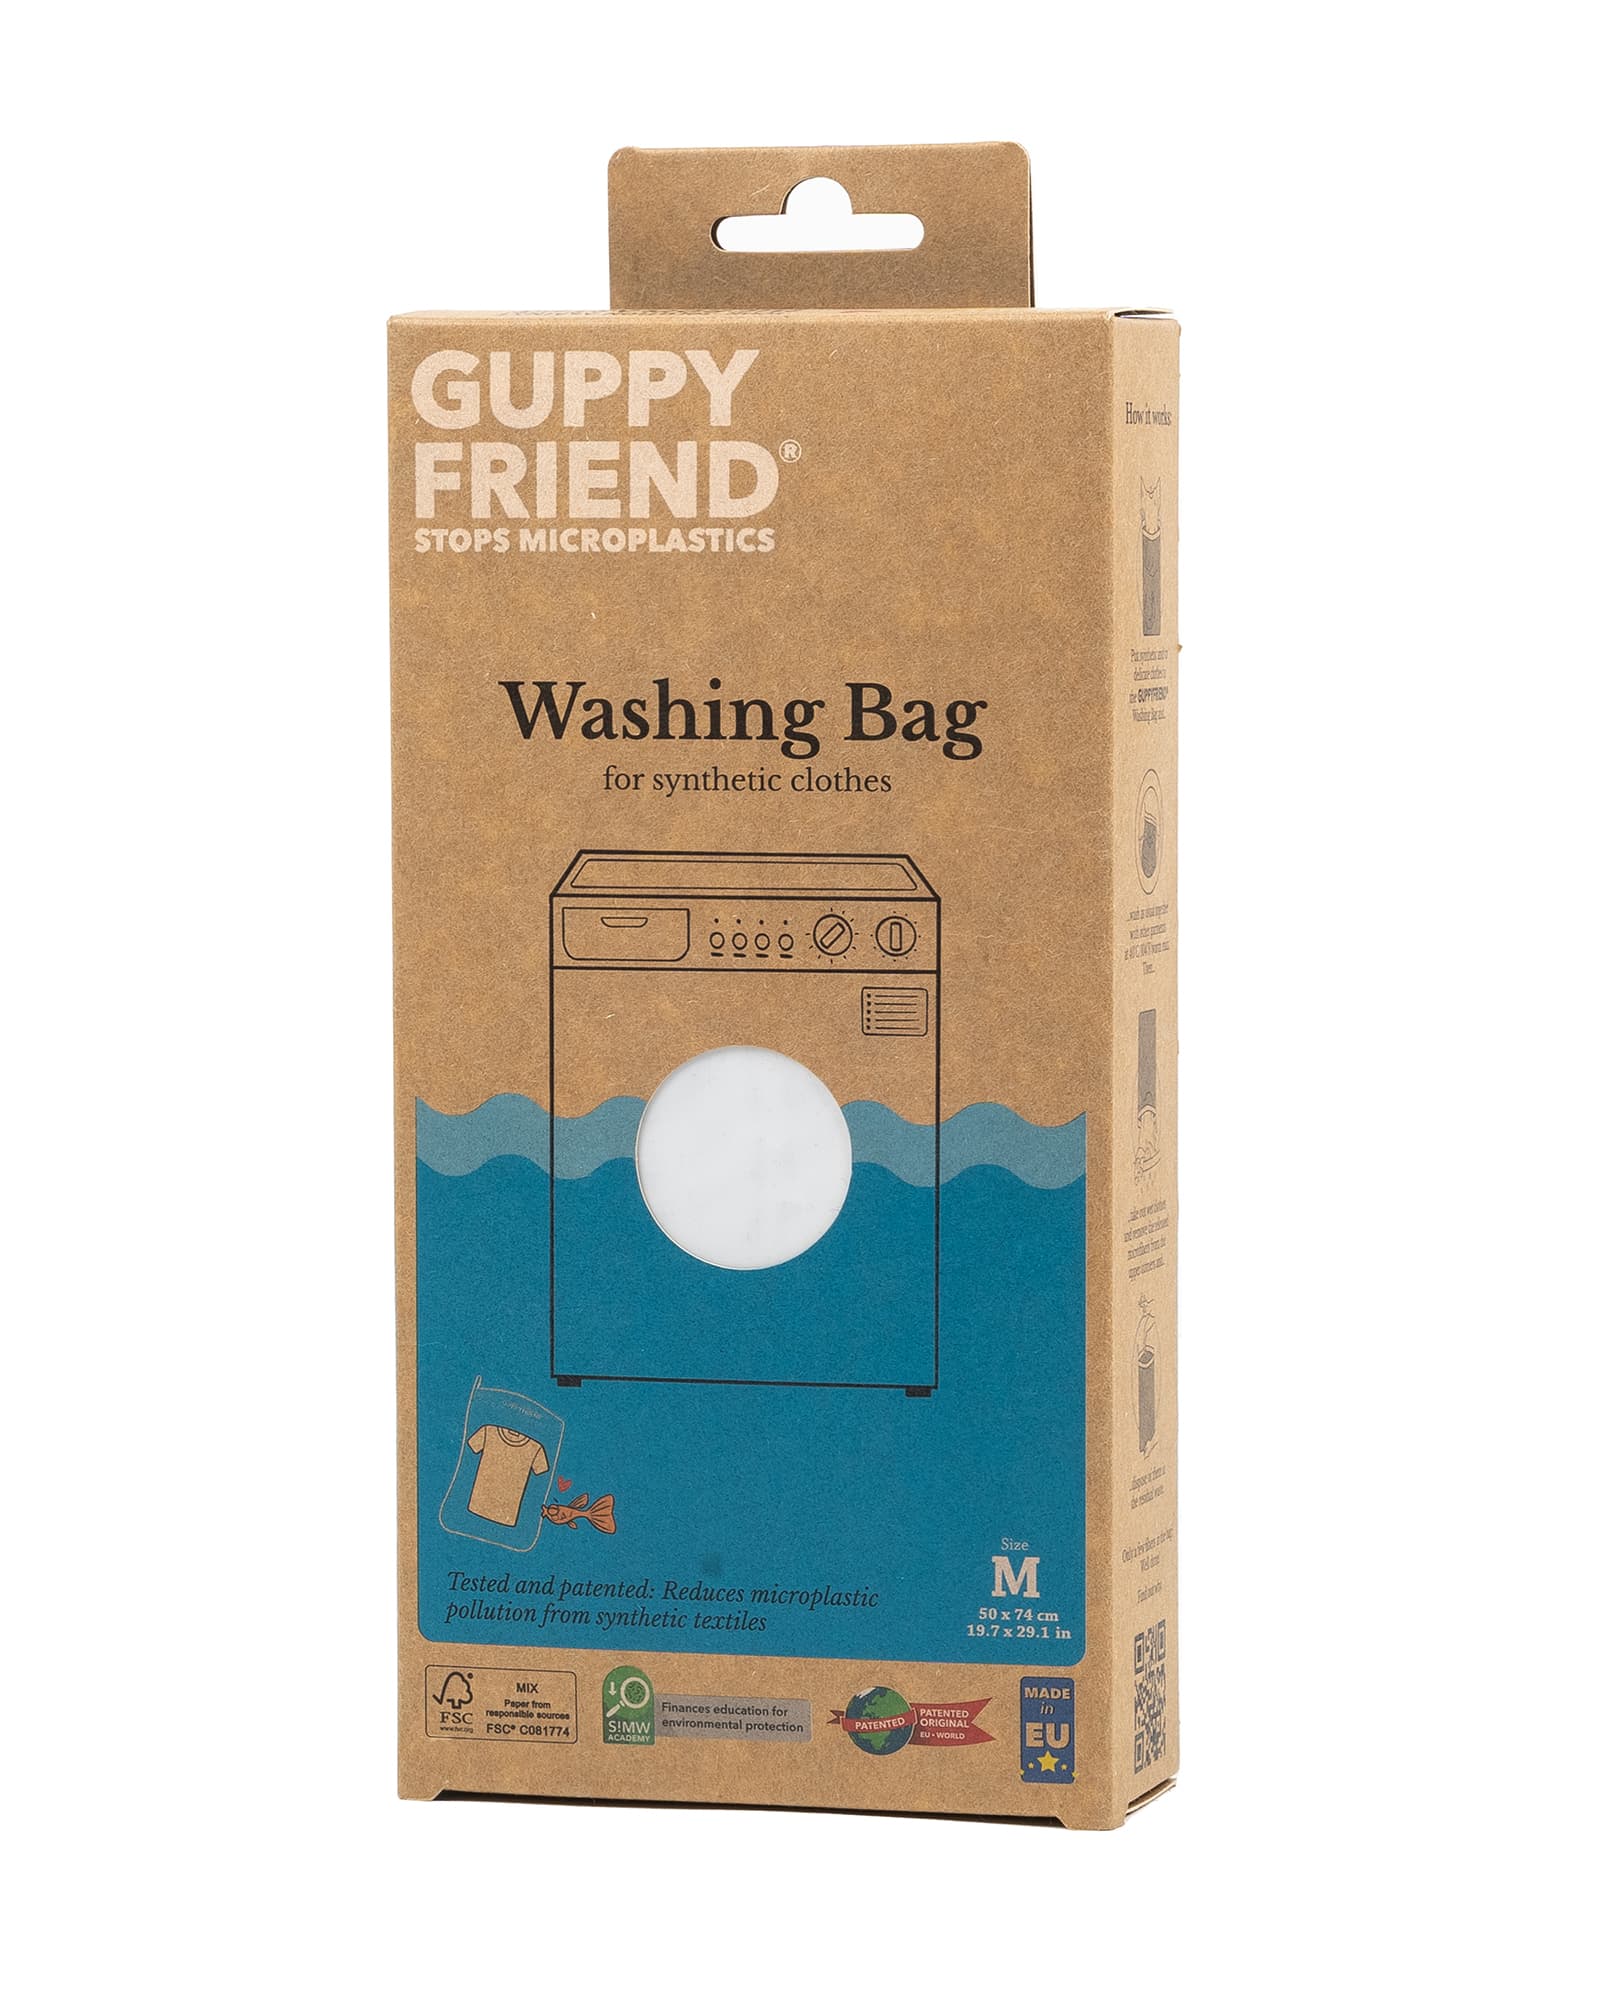 Guppyfriend wash bag – atelier b